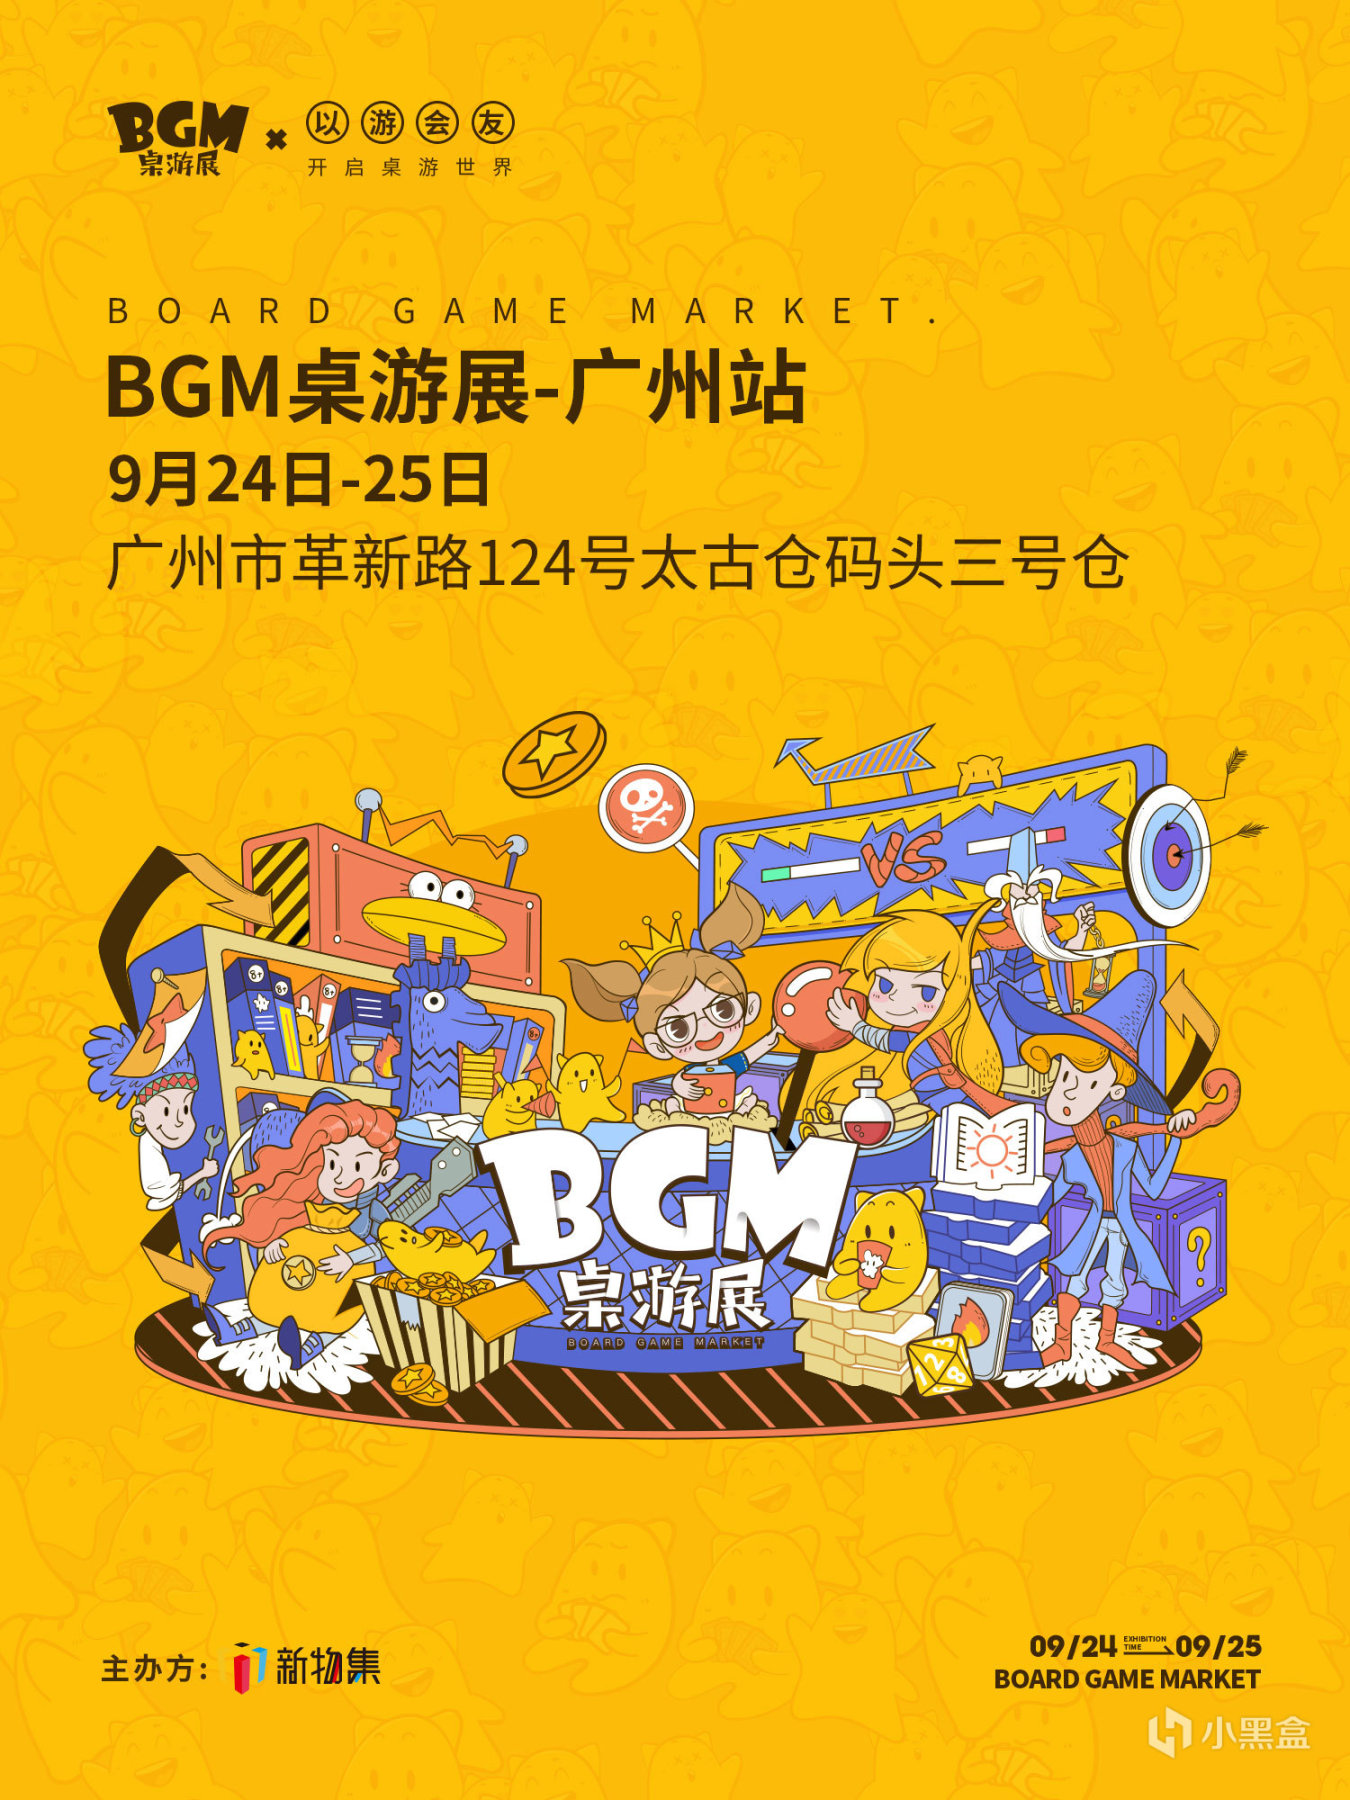 【桌游综合】2022BGM桌游展-广州站门票预售开启！数量有限，快来预约吧-第0张